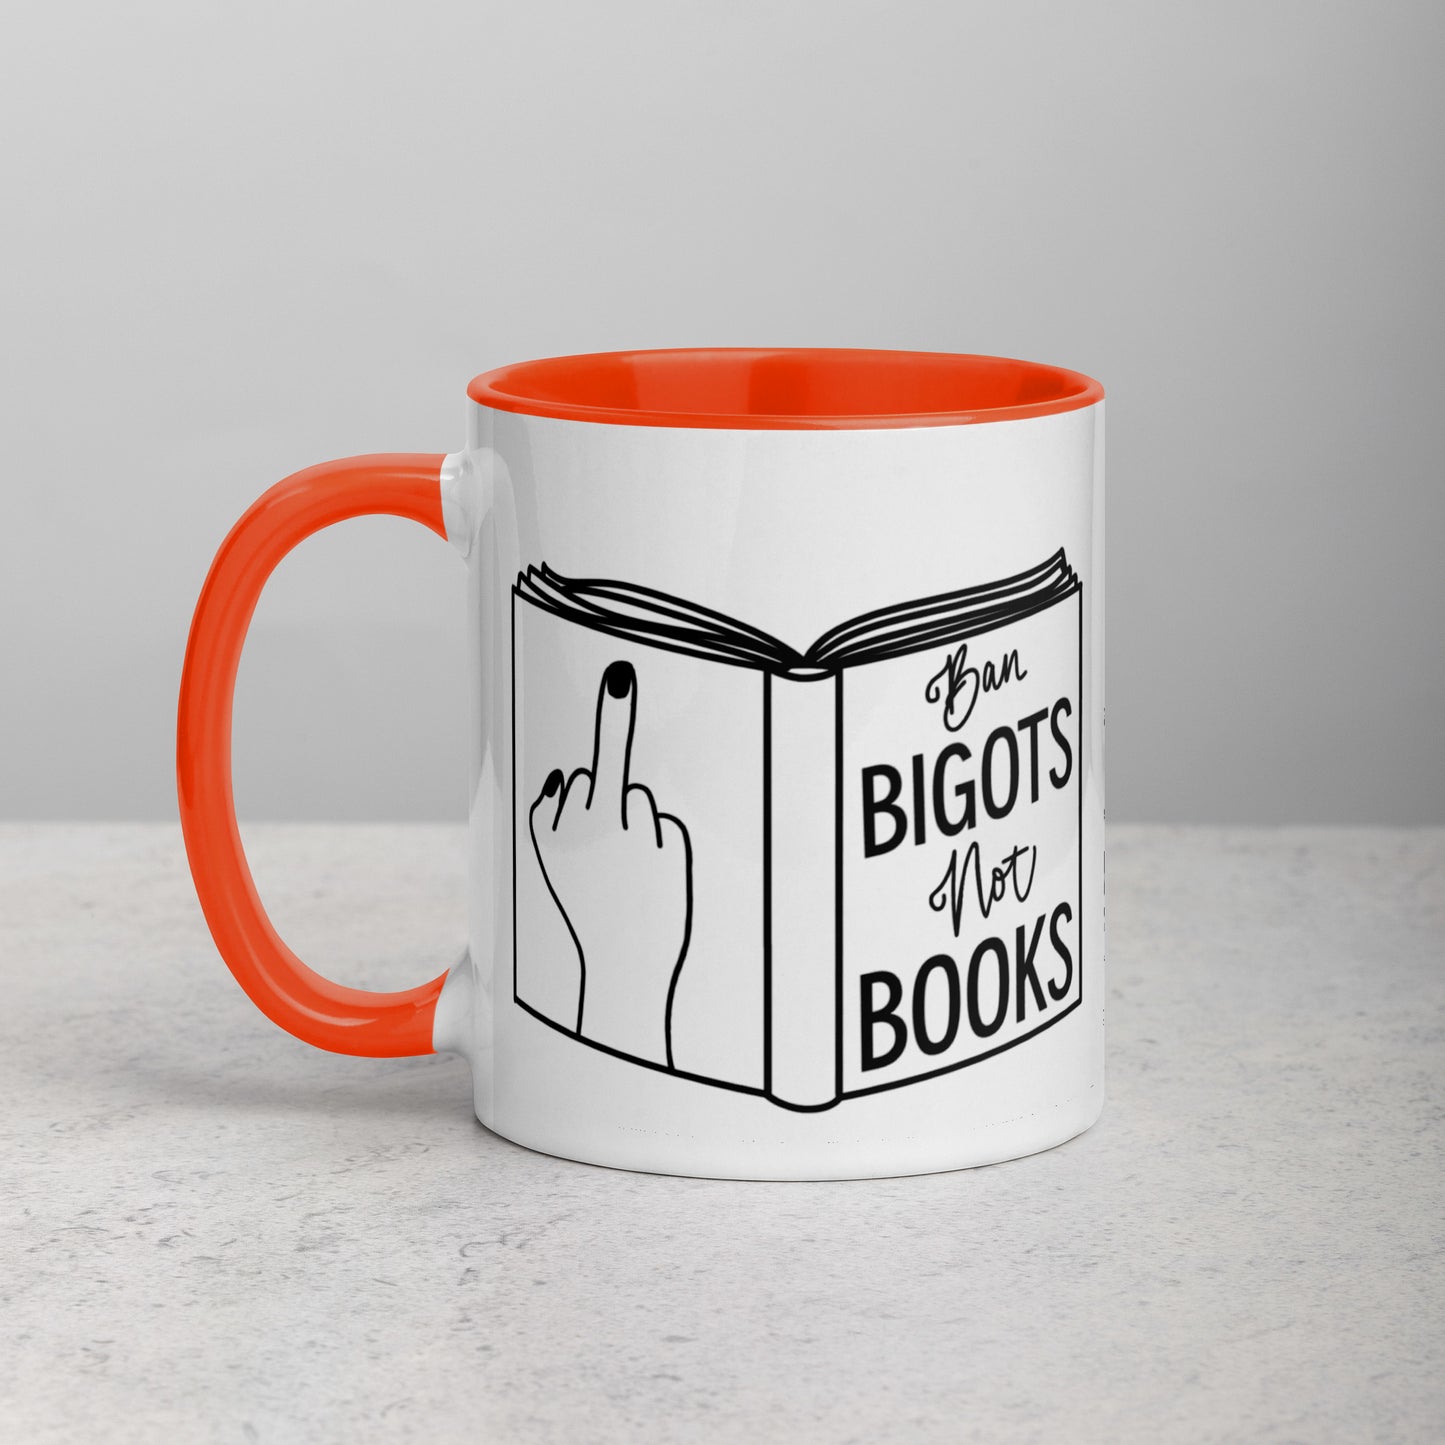 Ban Bigots, Not Books Mug